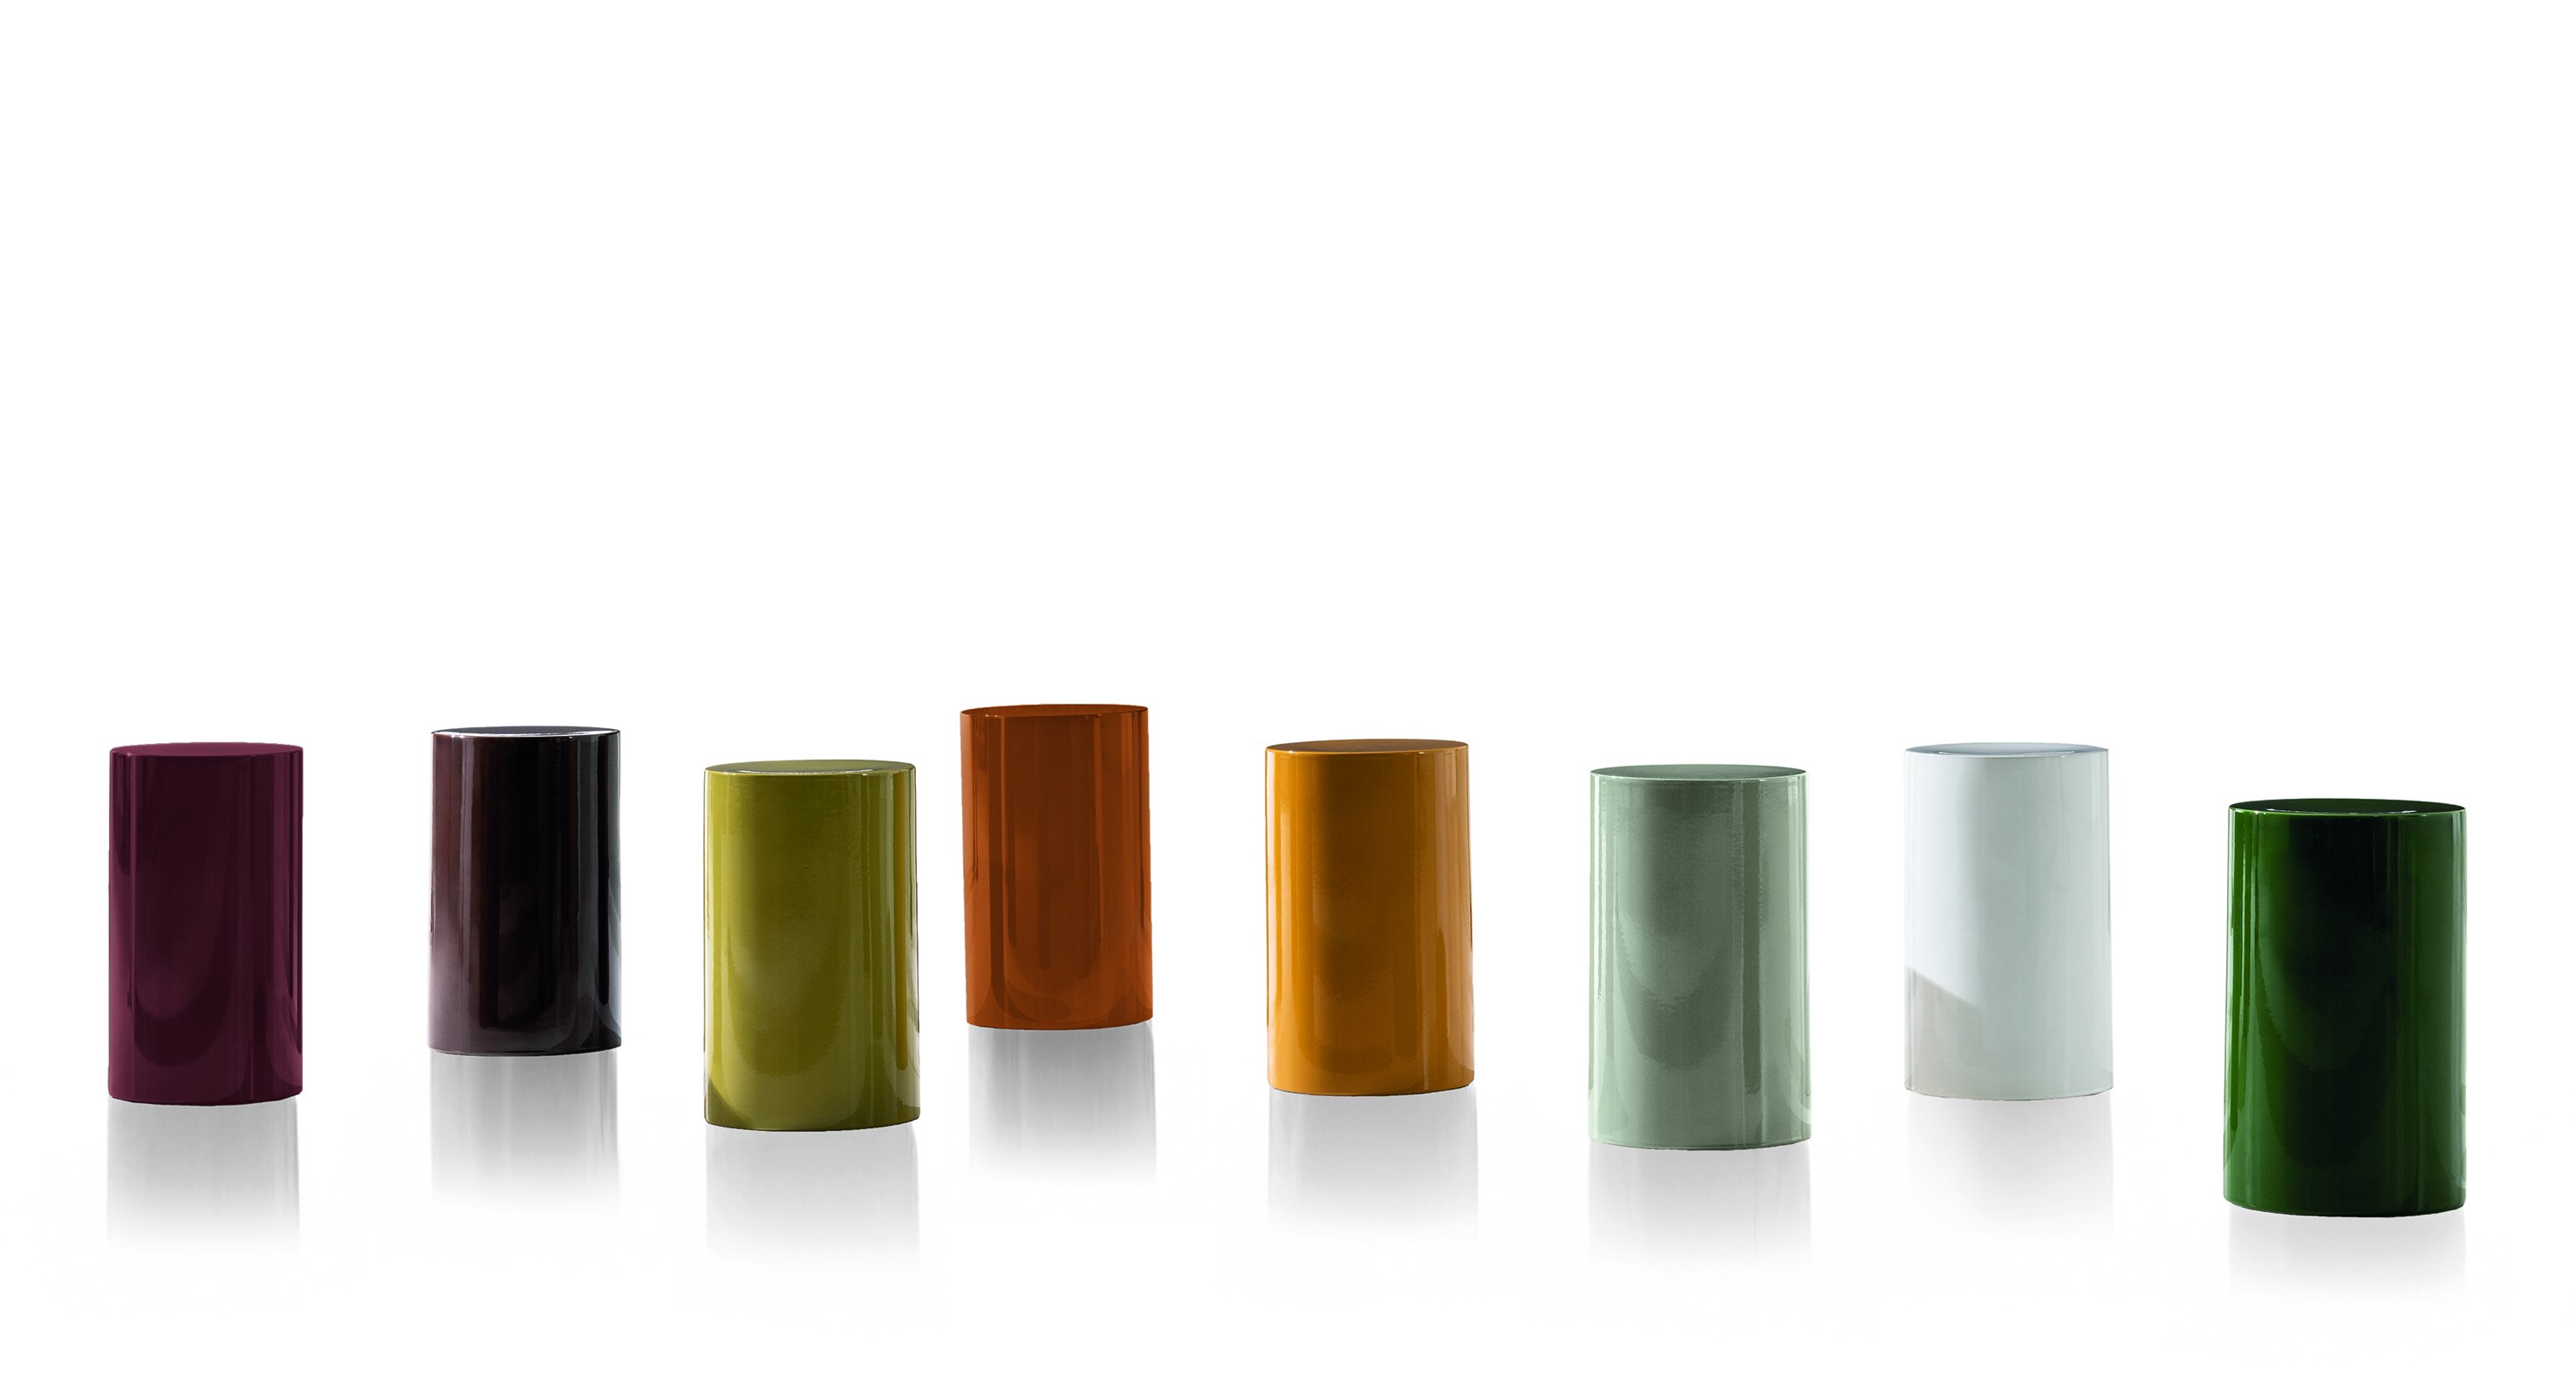 Milan design Week Minotti Pilotis ceramic colorful coffee tables